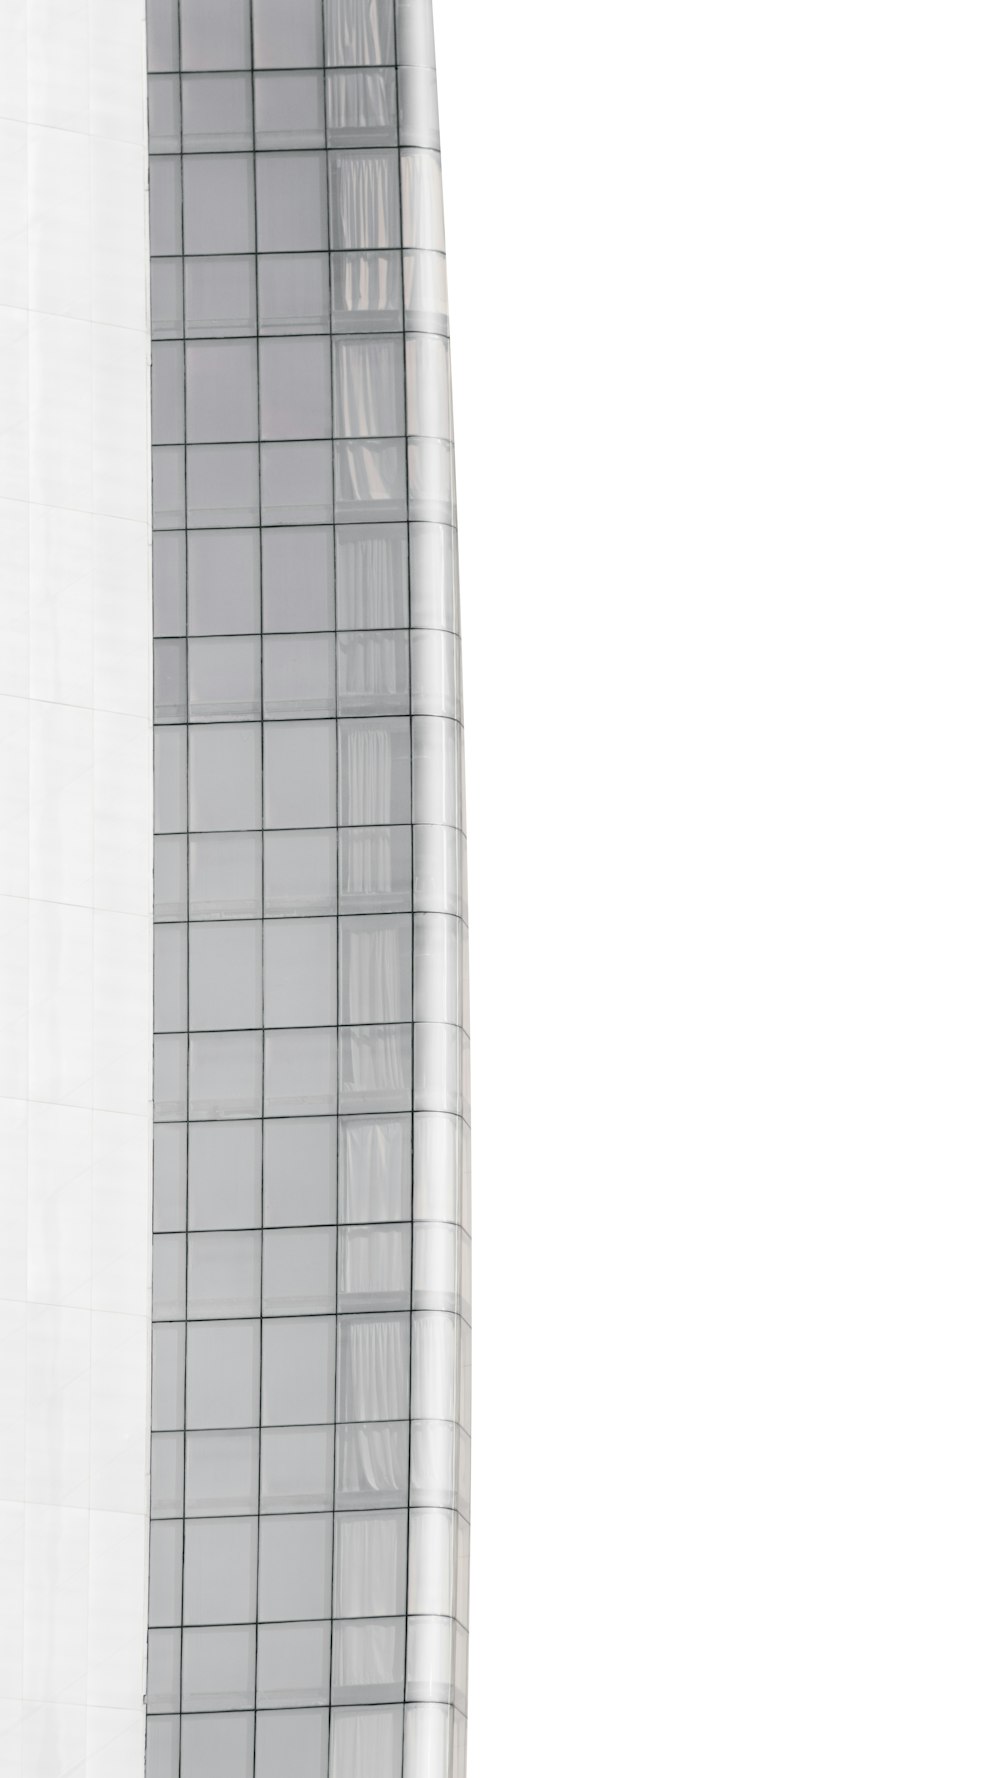 Bâtiment en béton blanc avec fenêtres en verre